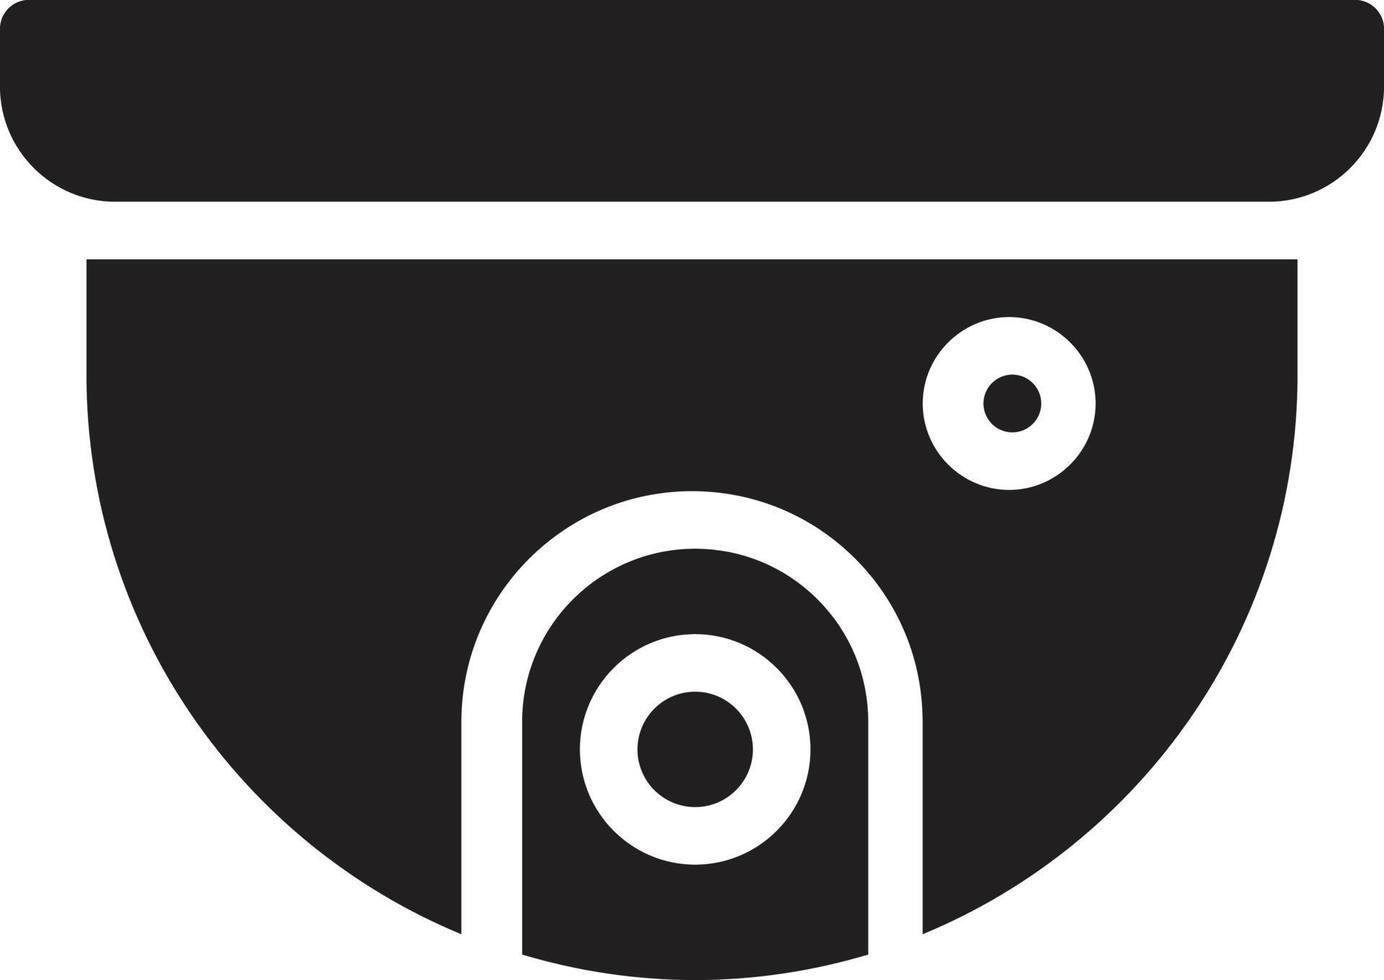 ilustração vetorial de CCTV em ícones de símbolos.vector de qualidade background.premium para conceito e design gráfico. vetor